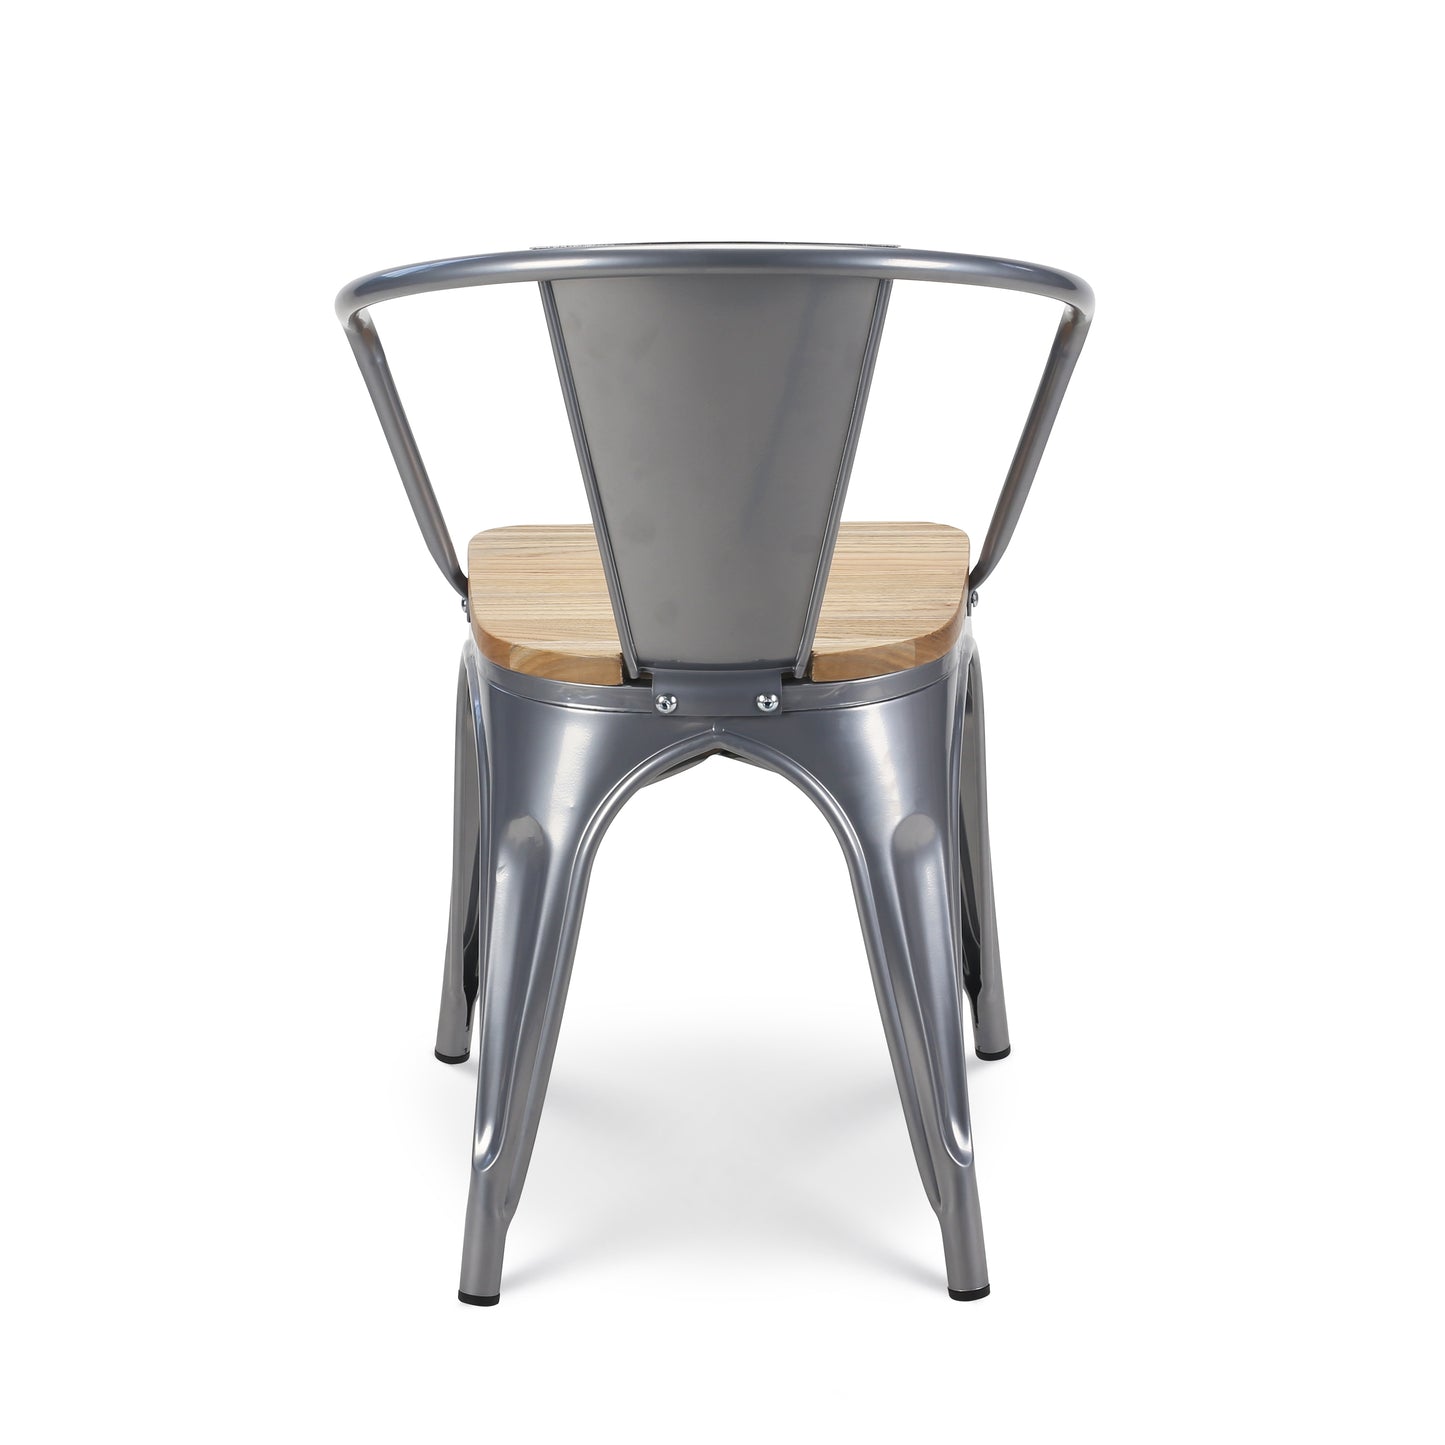 Lot de 4 chaises en métal gris argenté style industriel avec assise en bois clair - Avec accoudoirs